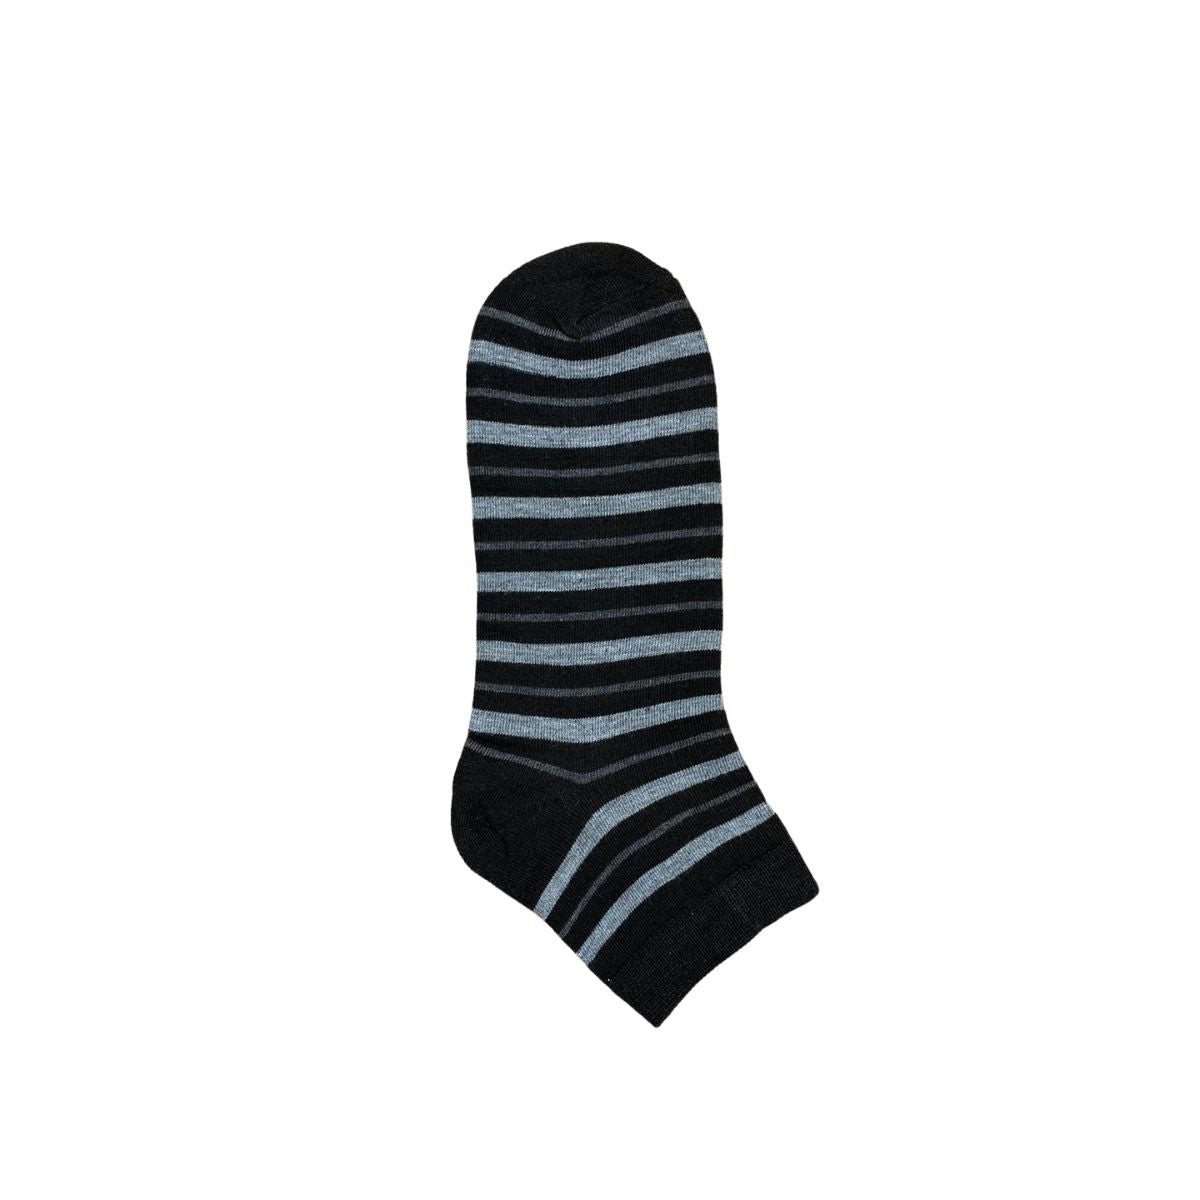 calcetines de algodón para hombre (12 pares)